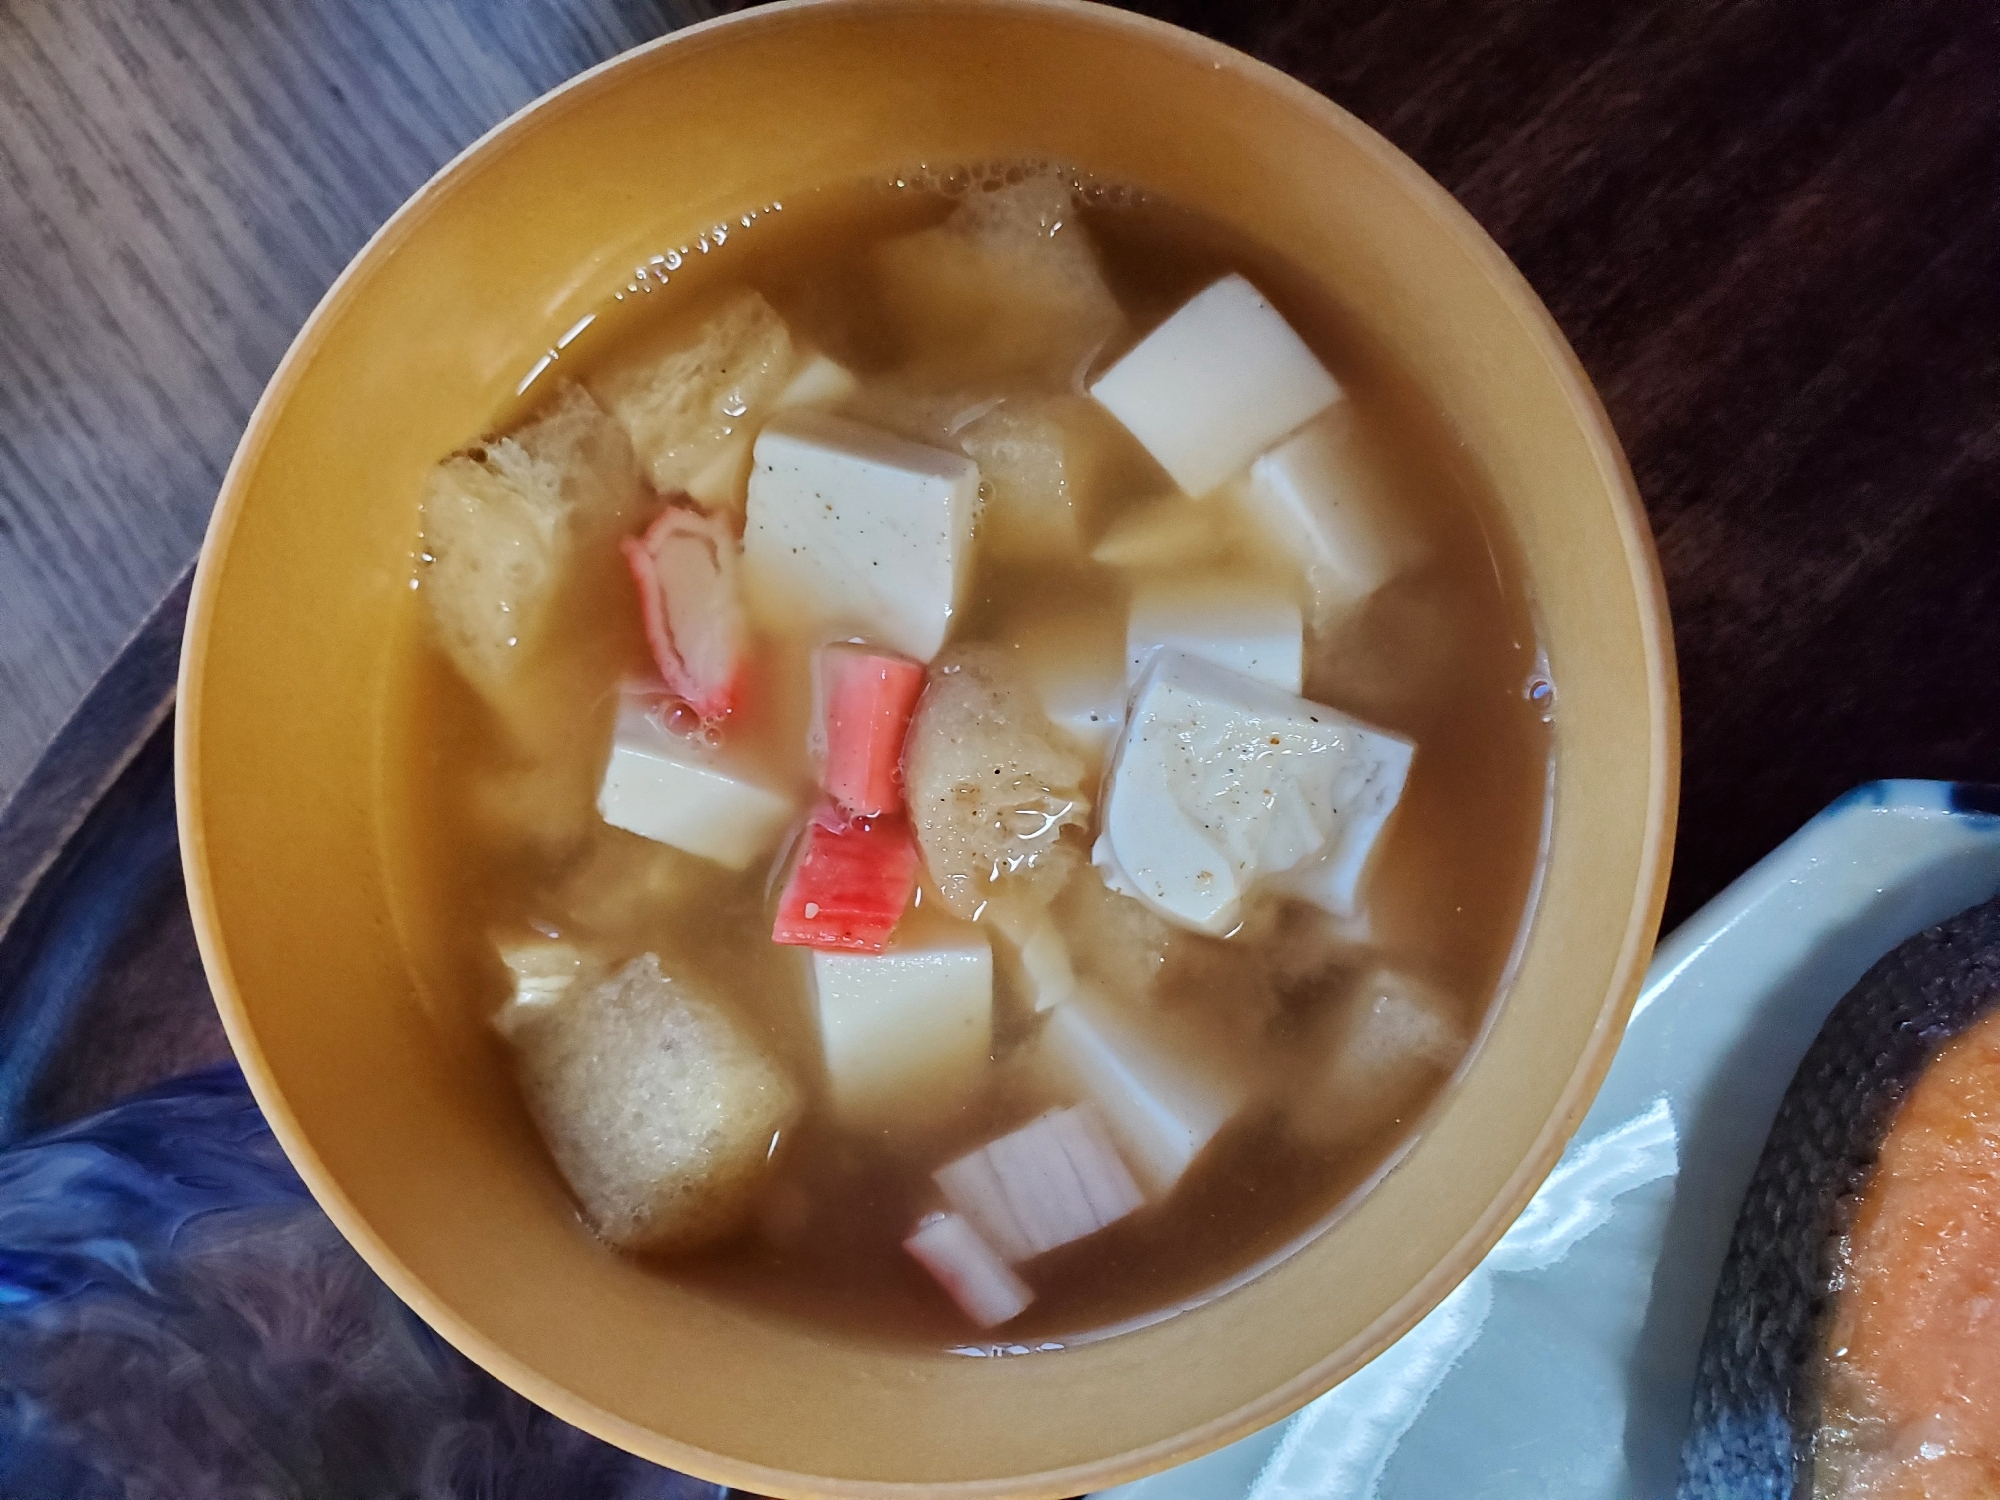 カニカマと豆腐と揚げのお味噌汁